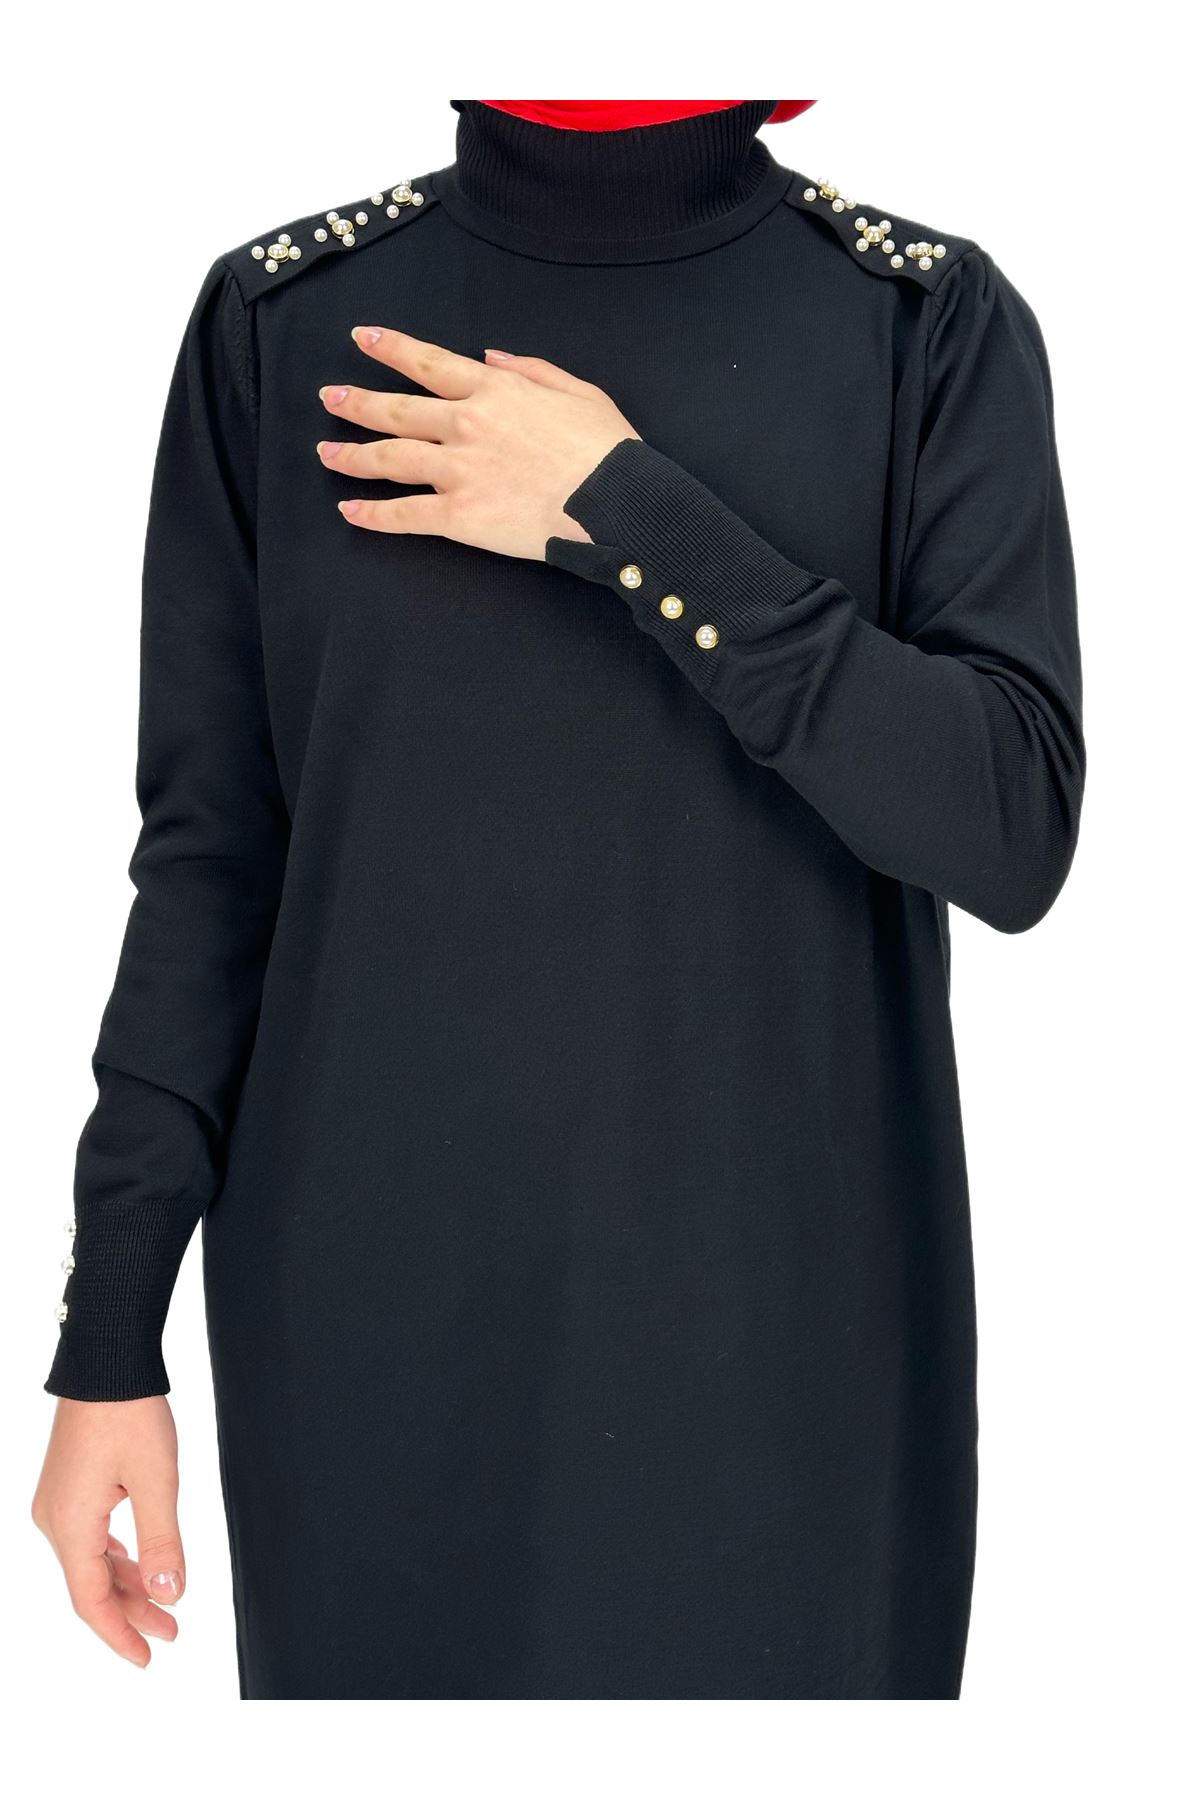 OTW182 Omuzu İncili Merserize Triko Elbise Siyah